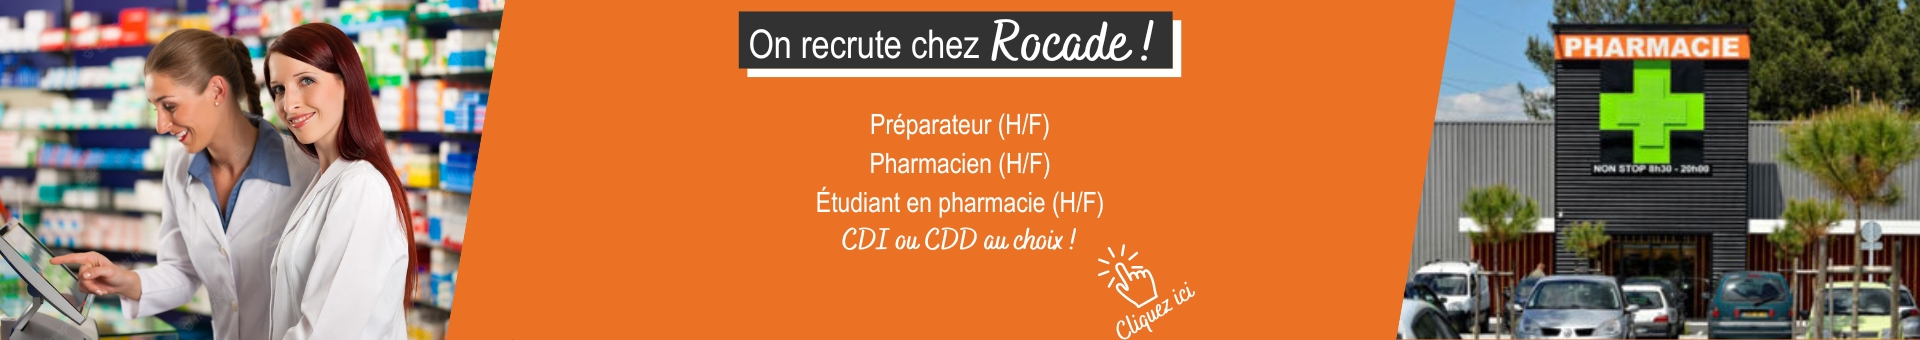 Pharmacie De La Rocade Saint Médard,St Médard En Jalles